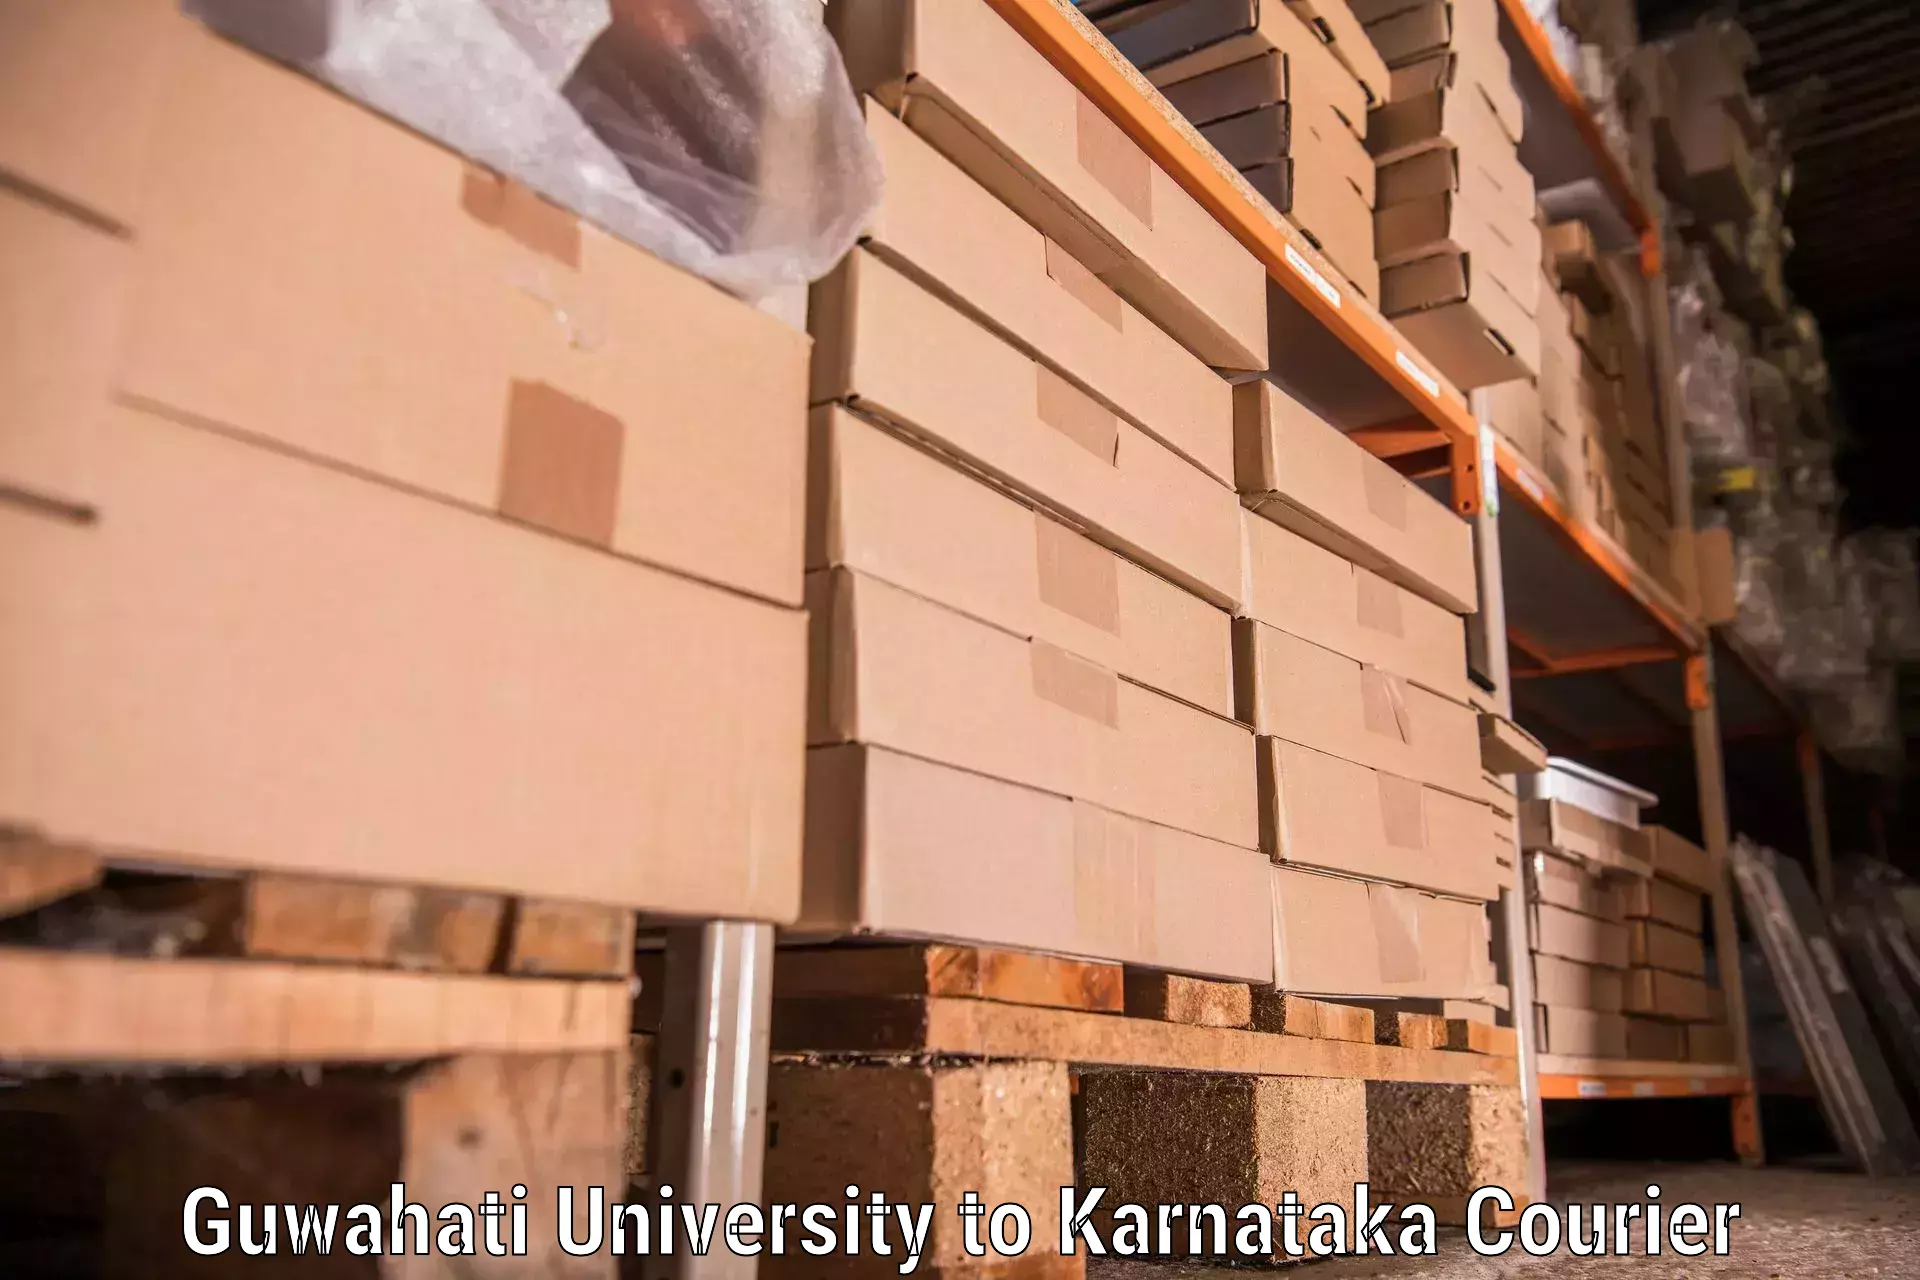 Furniture transport and storage Guwahati University to Haliyal